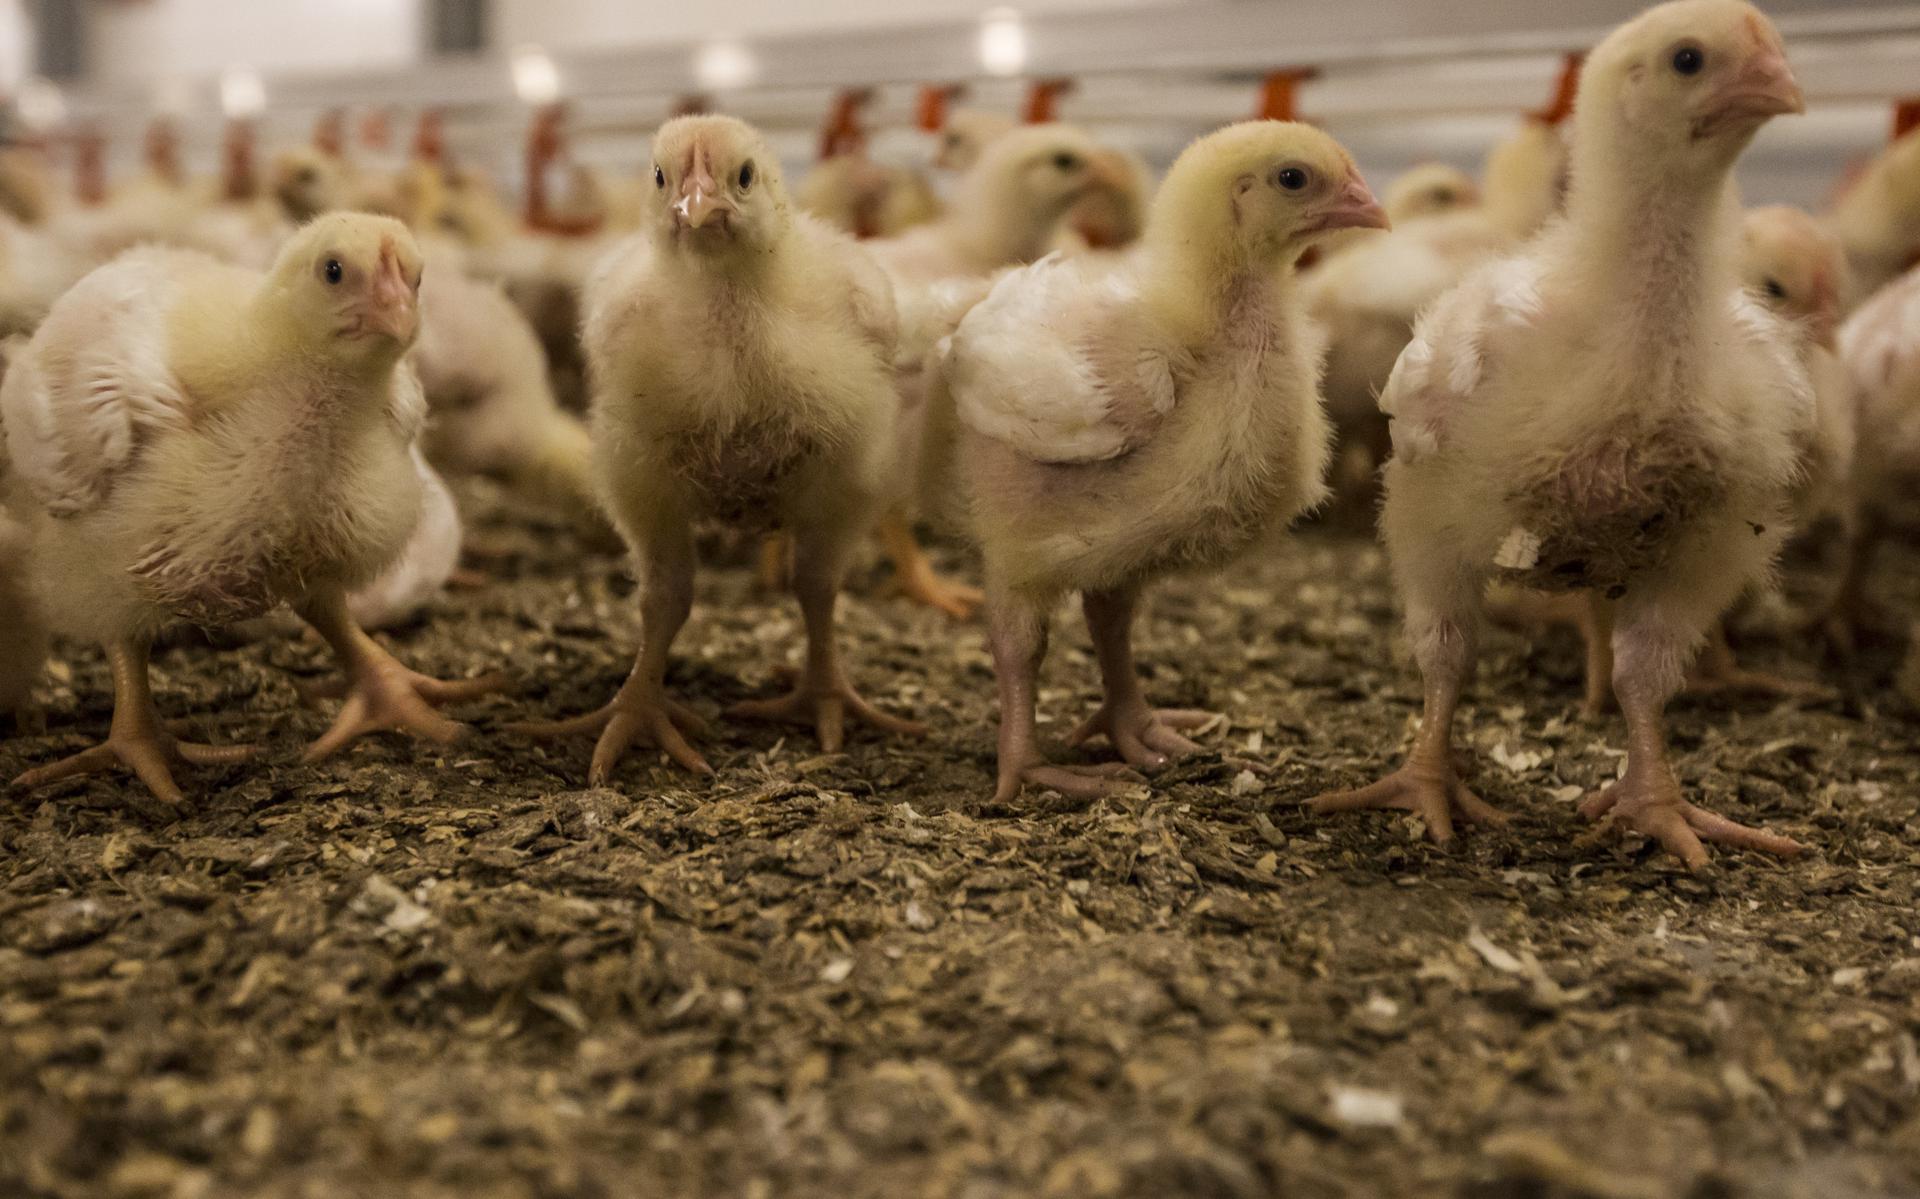 Amerika Kloppen Encyclopedie Hoge voerprijzen spelen kippenboeren parten: schap zonder ei en kippenvlees  dreigt - Leeuwarder Courant